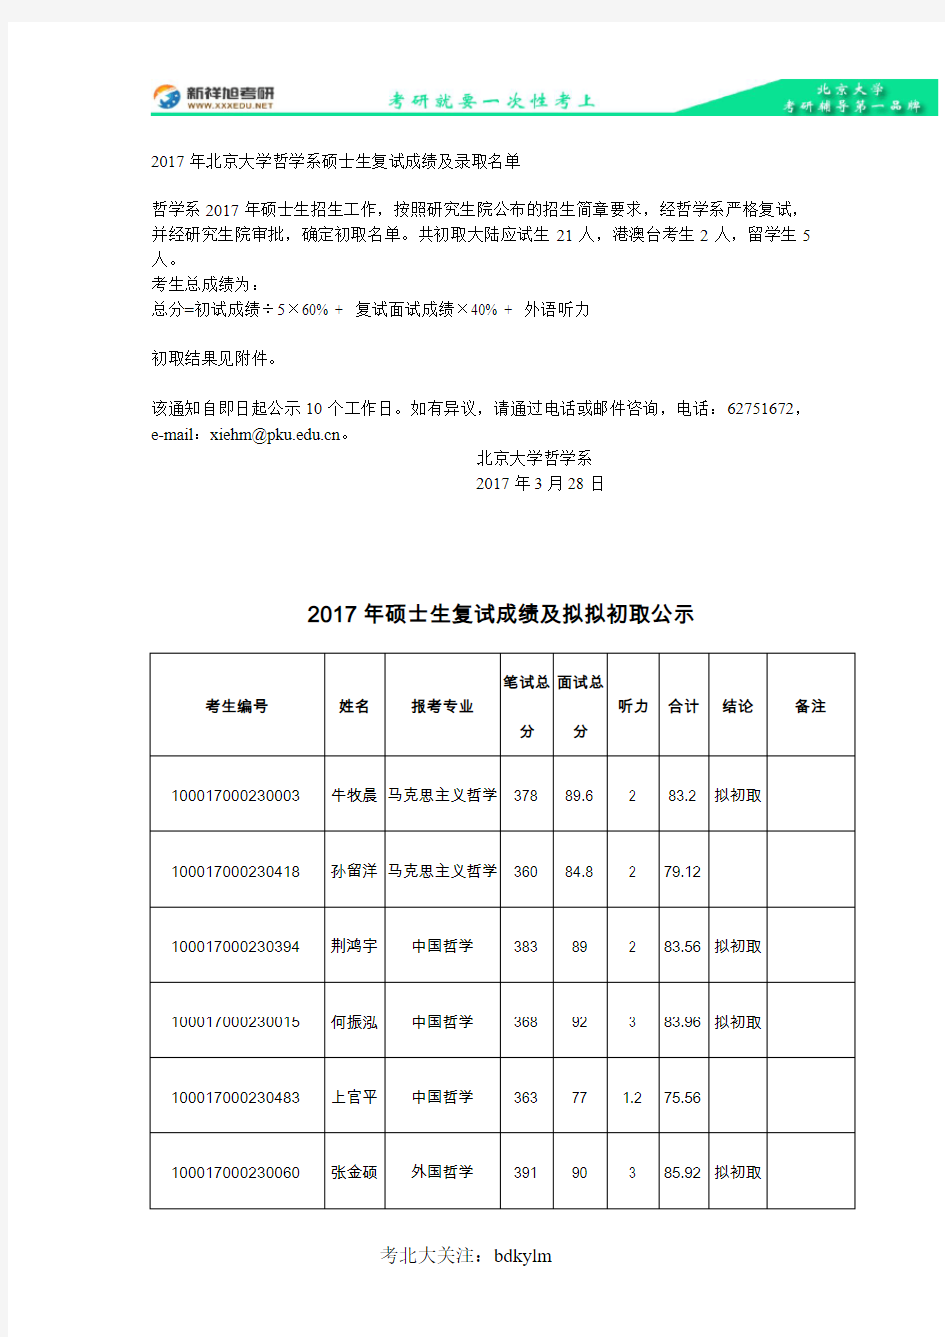 2017年北京大学哲学系硕士生复试成绩及录取名单